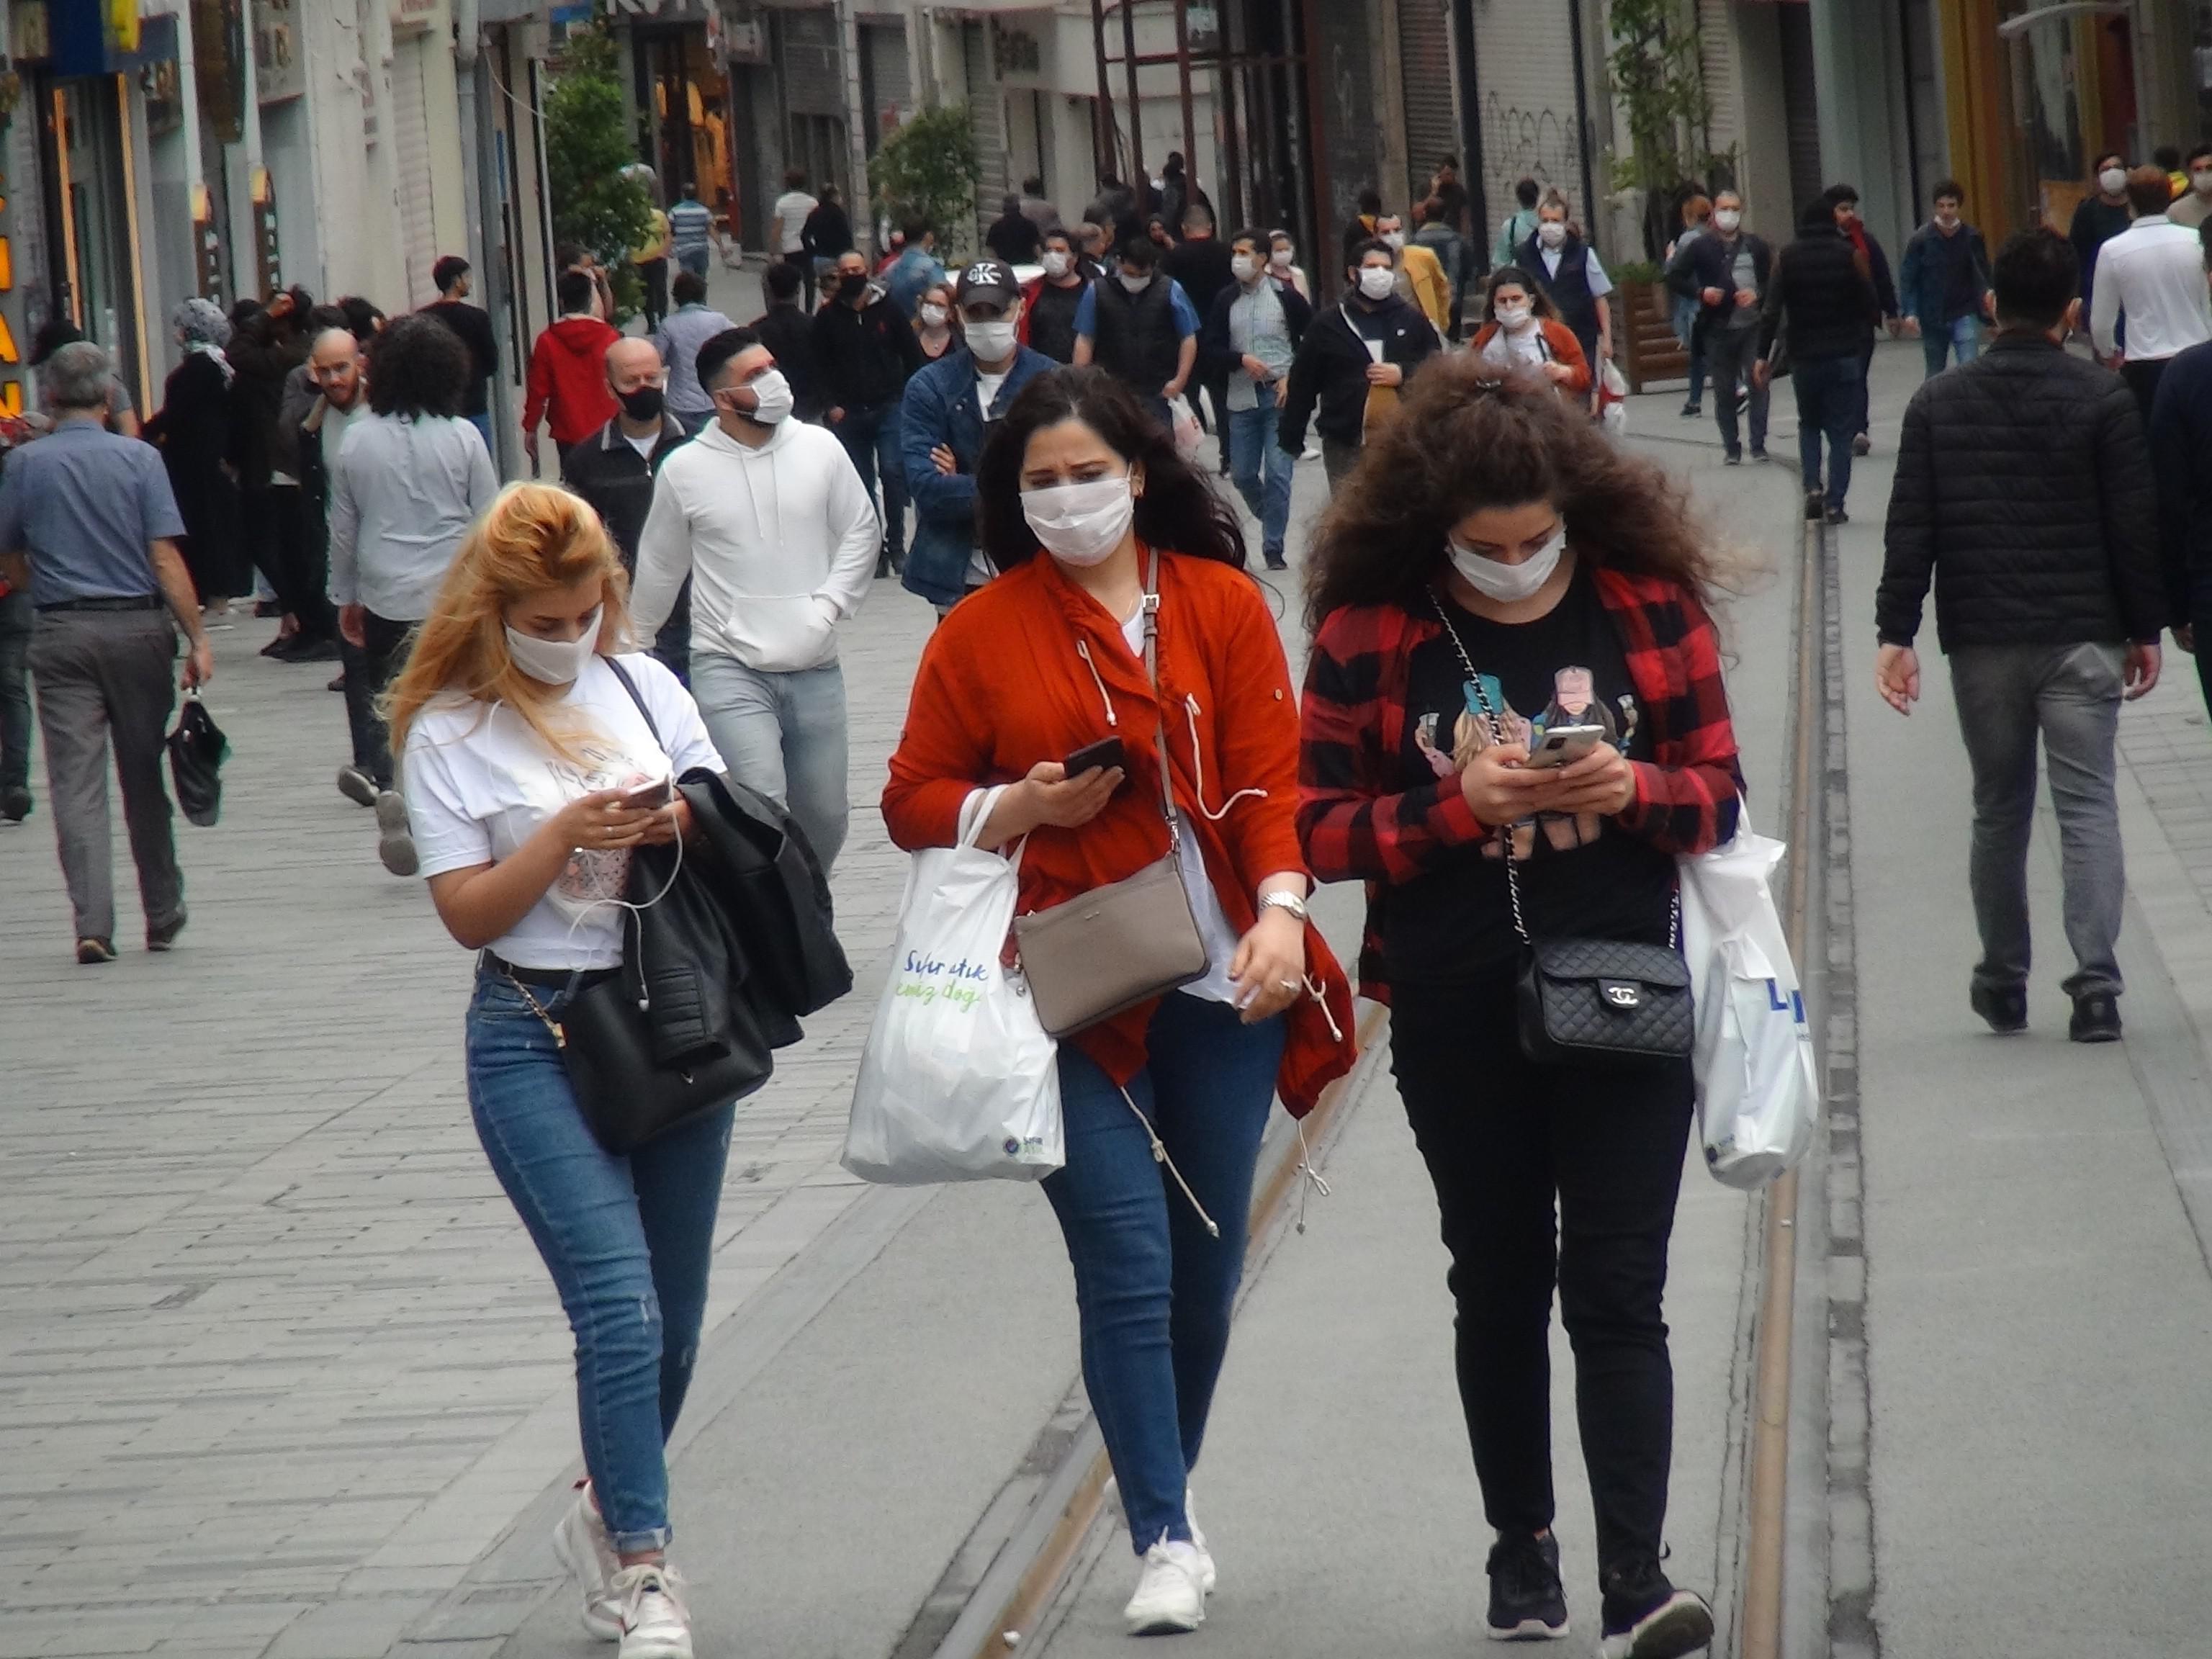 Yalova ve Bitlis ile birlikte maskesiz sokağa çıkma yasağı getirilen il sayısı 44 oldu